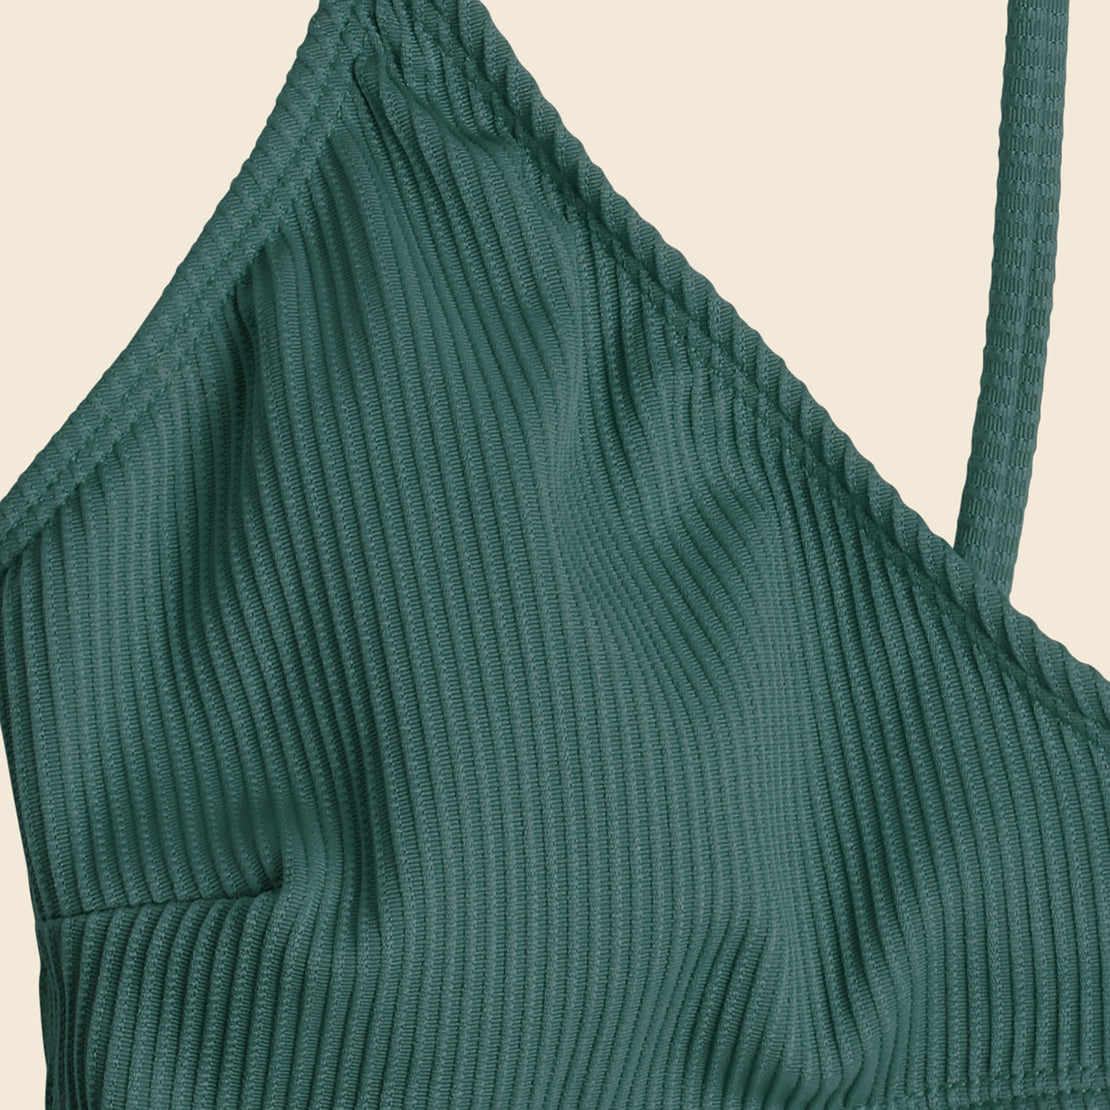 Margo Bikini Top - Sequoia Green - Mollusk - STAG Provisions - W - Swim - Top